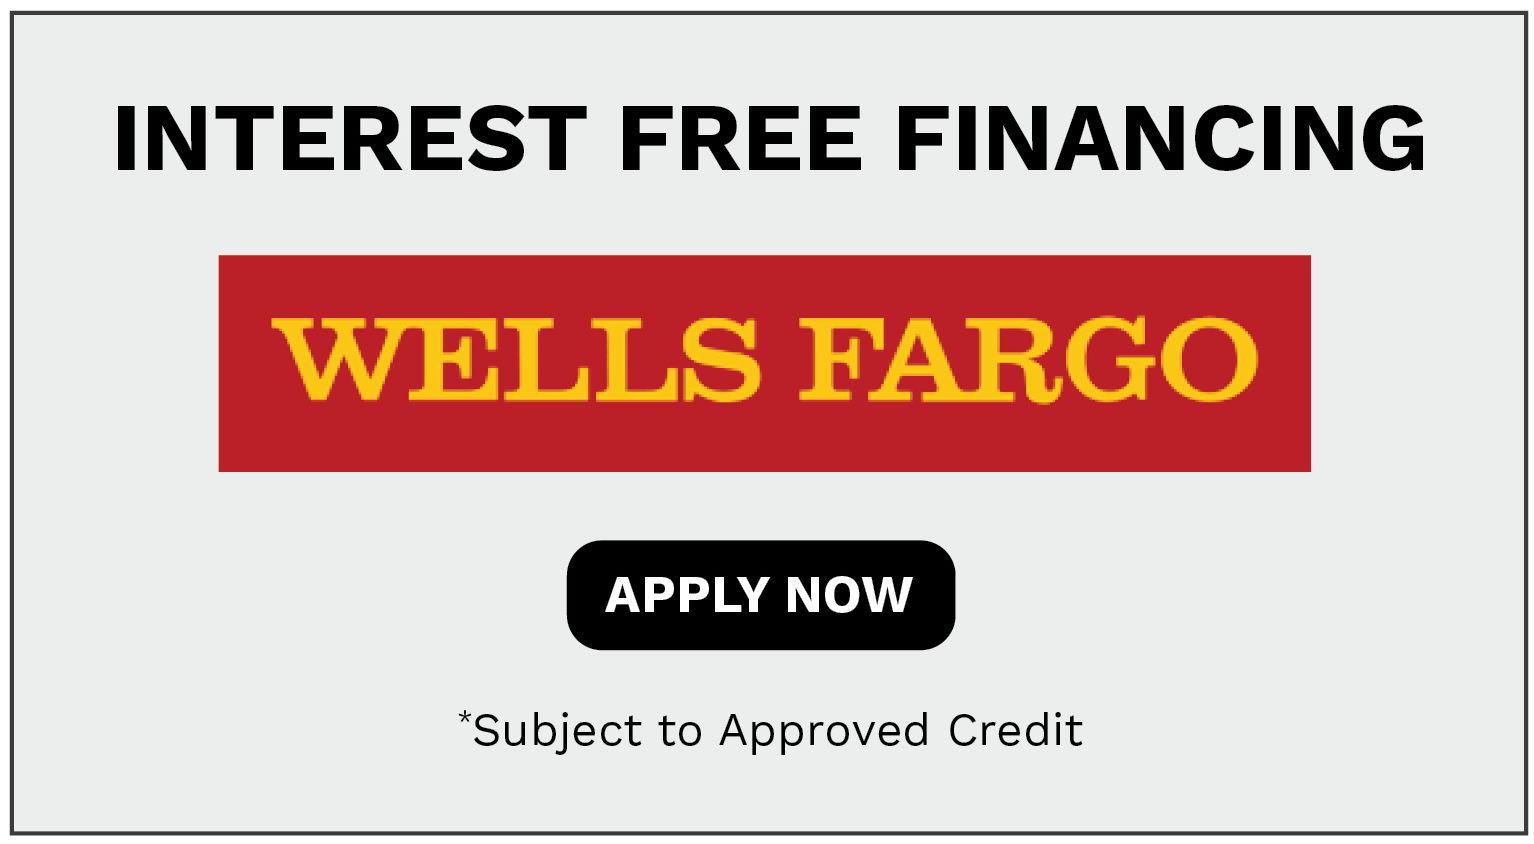 Wells Fargo Finance Offer